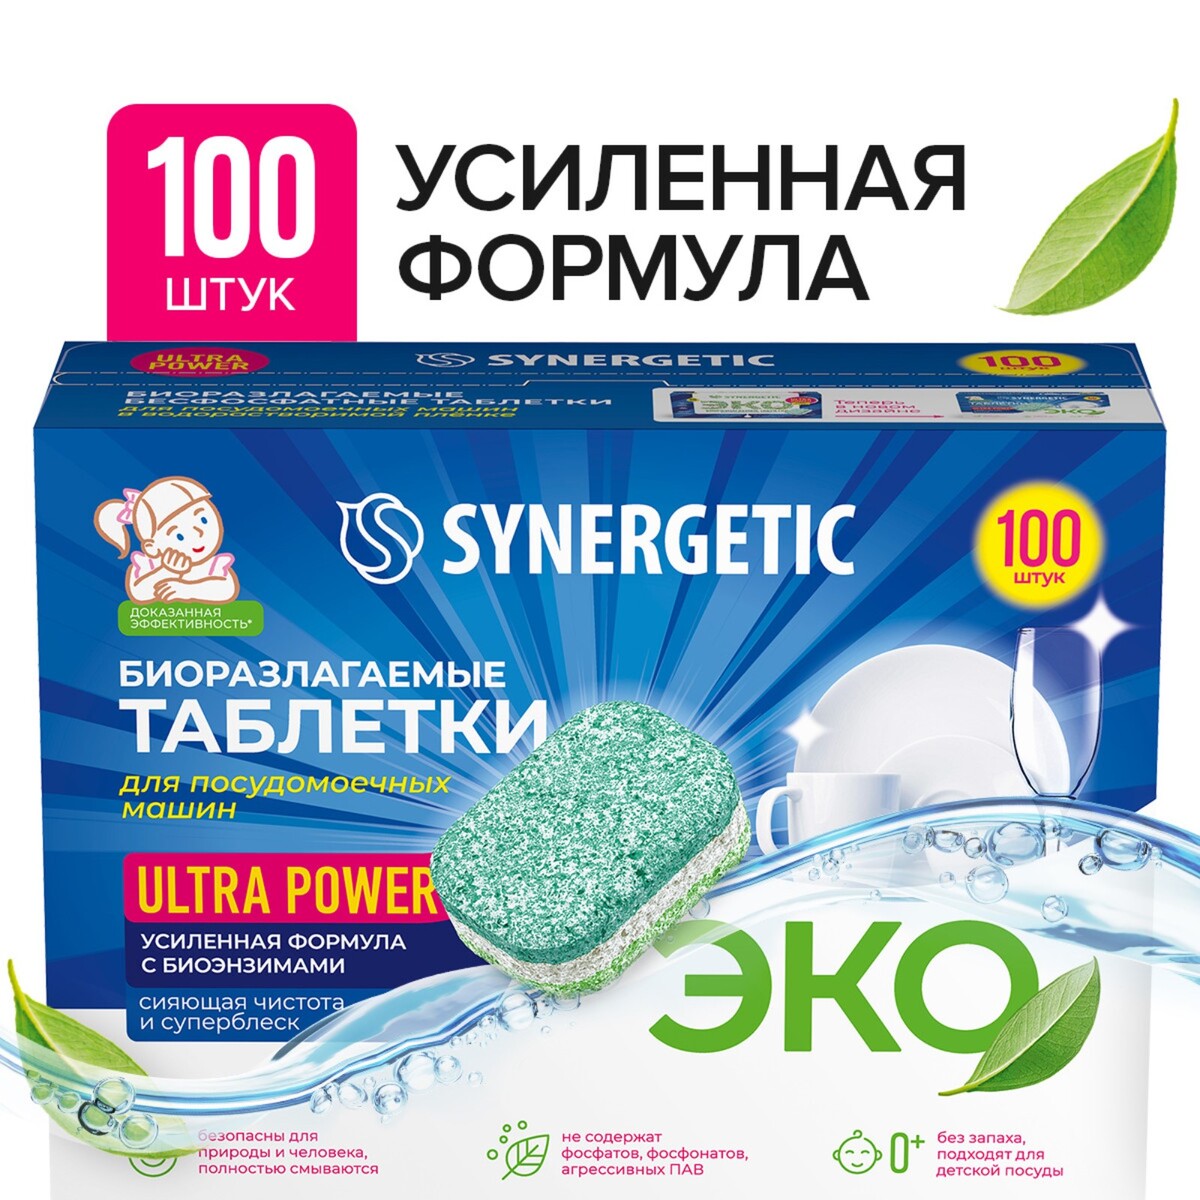 Таблетки для посудомоечных машин synergetic ultra power, бесфосфатные,биоразлагаемые, 100 шт соль для посудомоечных машин synergetic 750 г